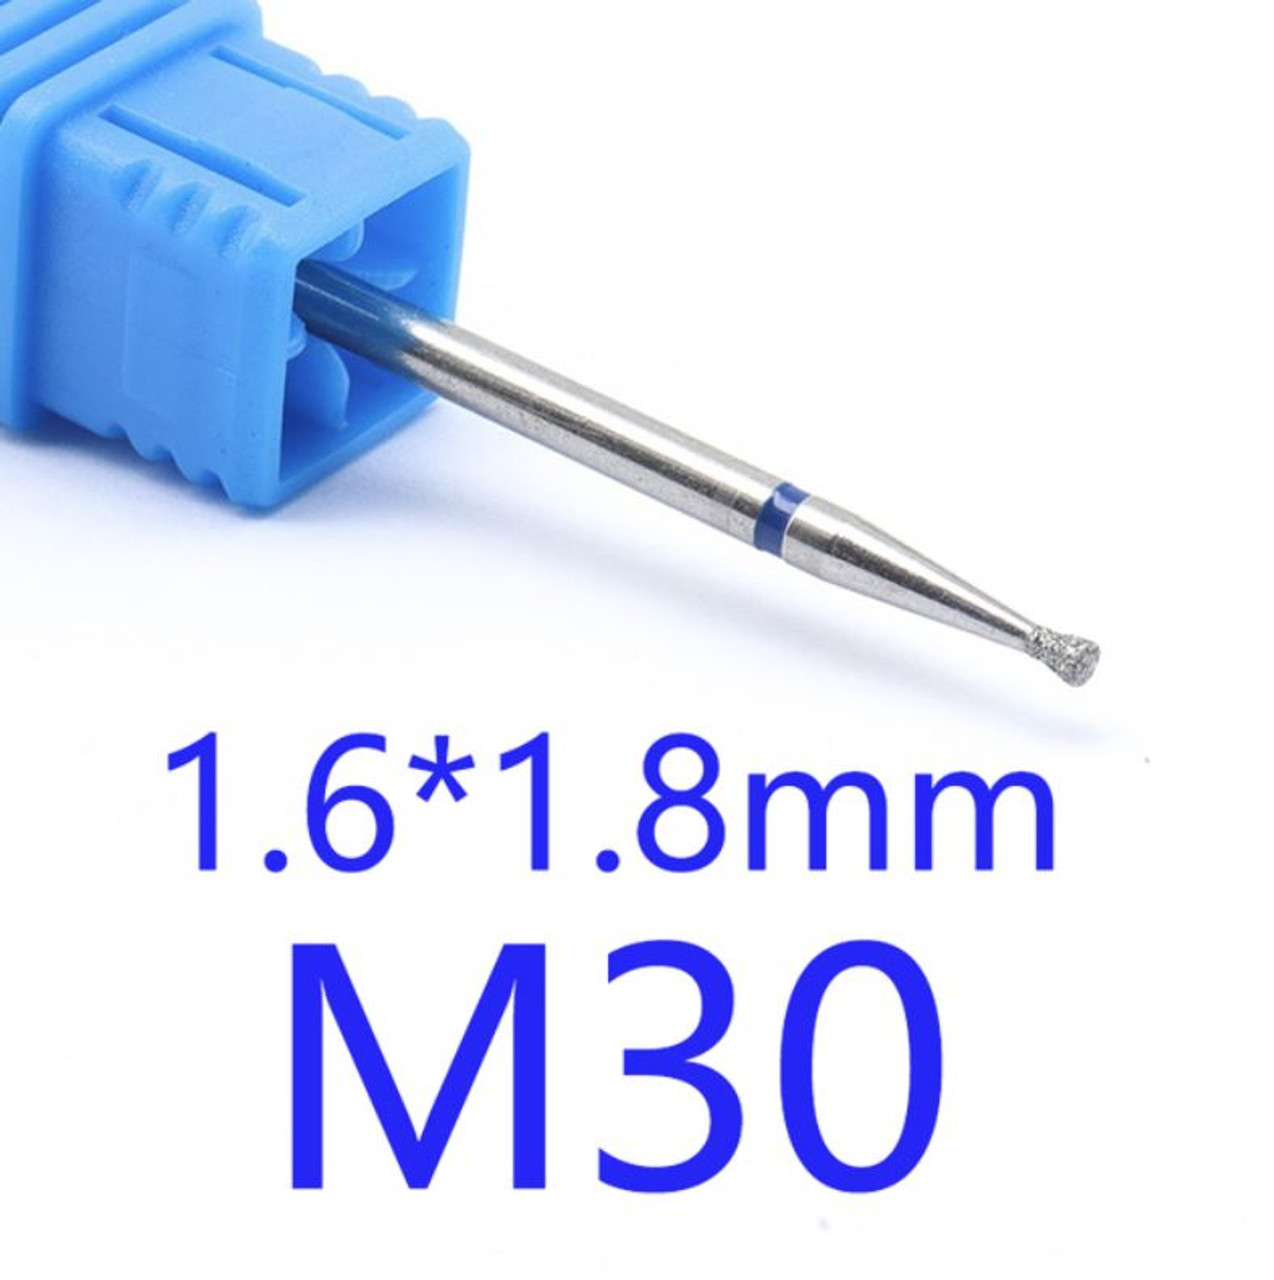 NDi beauty Diamond Drill Bit - 3/32 shank (MEDIUM) - M30